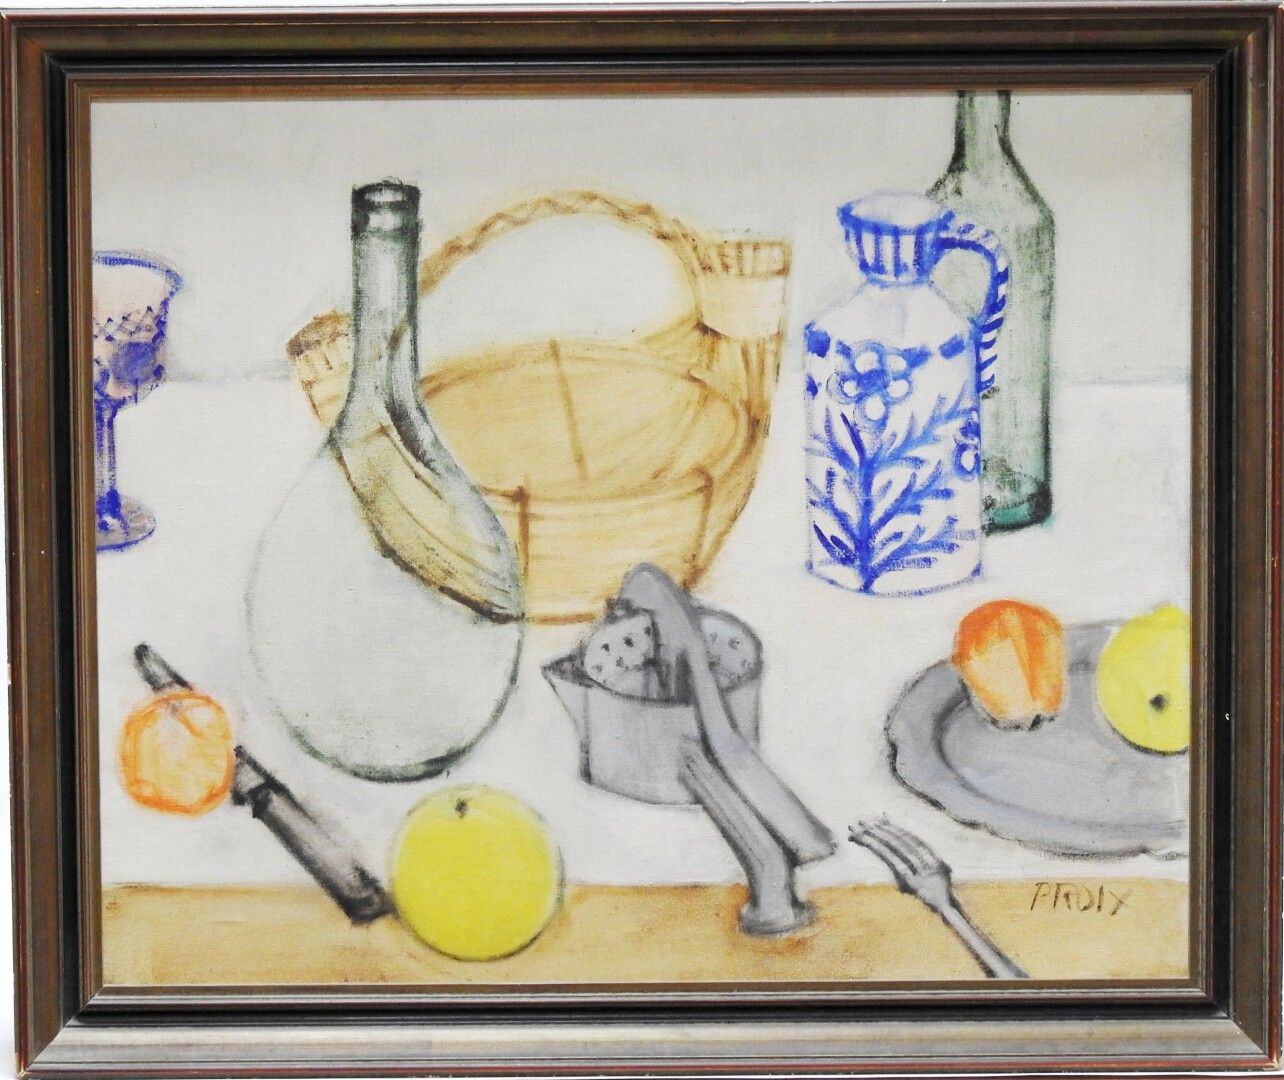 Null 让-保罗-普罗伊克斯(生于1926年)

酿酒厂的静物

布面油画，右下方有签名，日期为59，背面有签名

60 x 73 cm